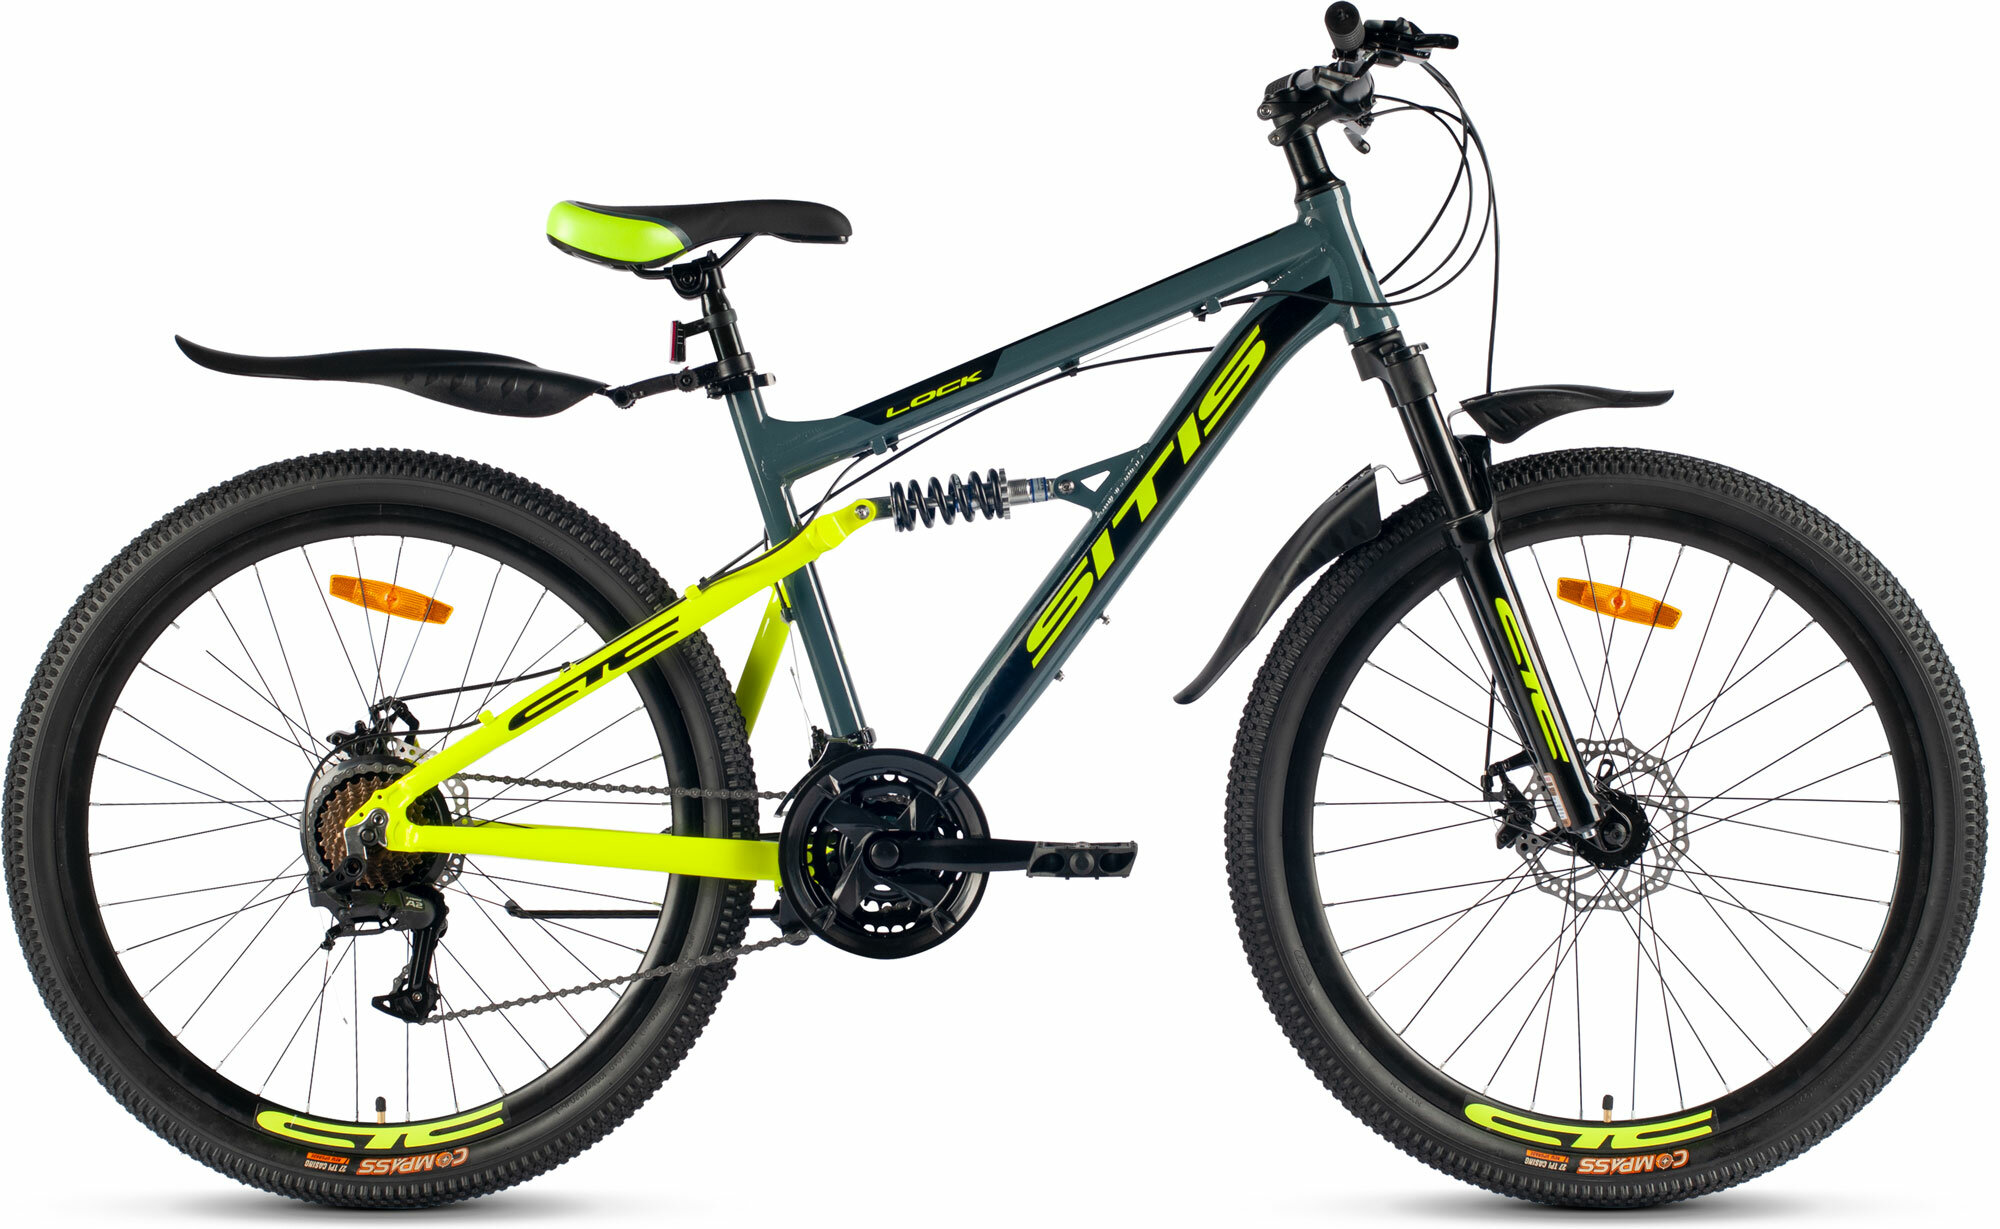 Велосипед горный SITIS LOCK 26" (2023), full-suspension, детский, мужской, для мальчиков, алюминиевая рама, 21 скорость, дисковые механические тормоза, цвет Dark Grey-Green-Black, серый/зеленый/черный цвет, размер рамы 17", для роста 170-180 см